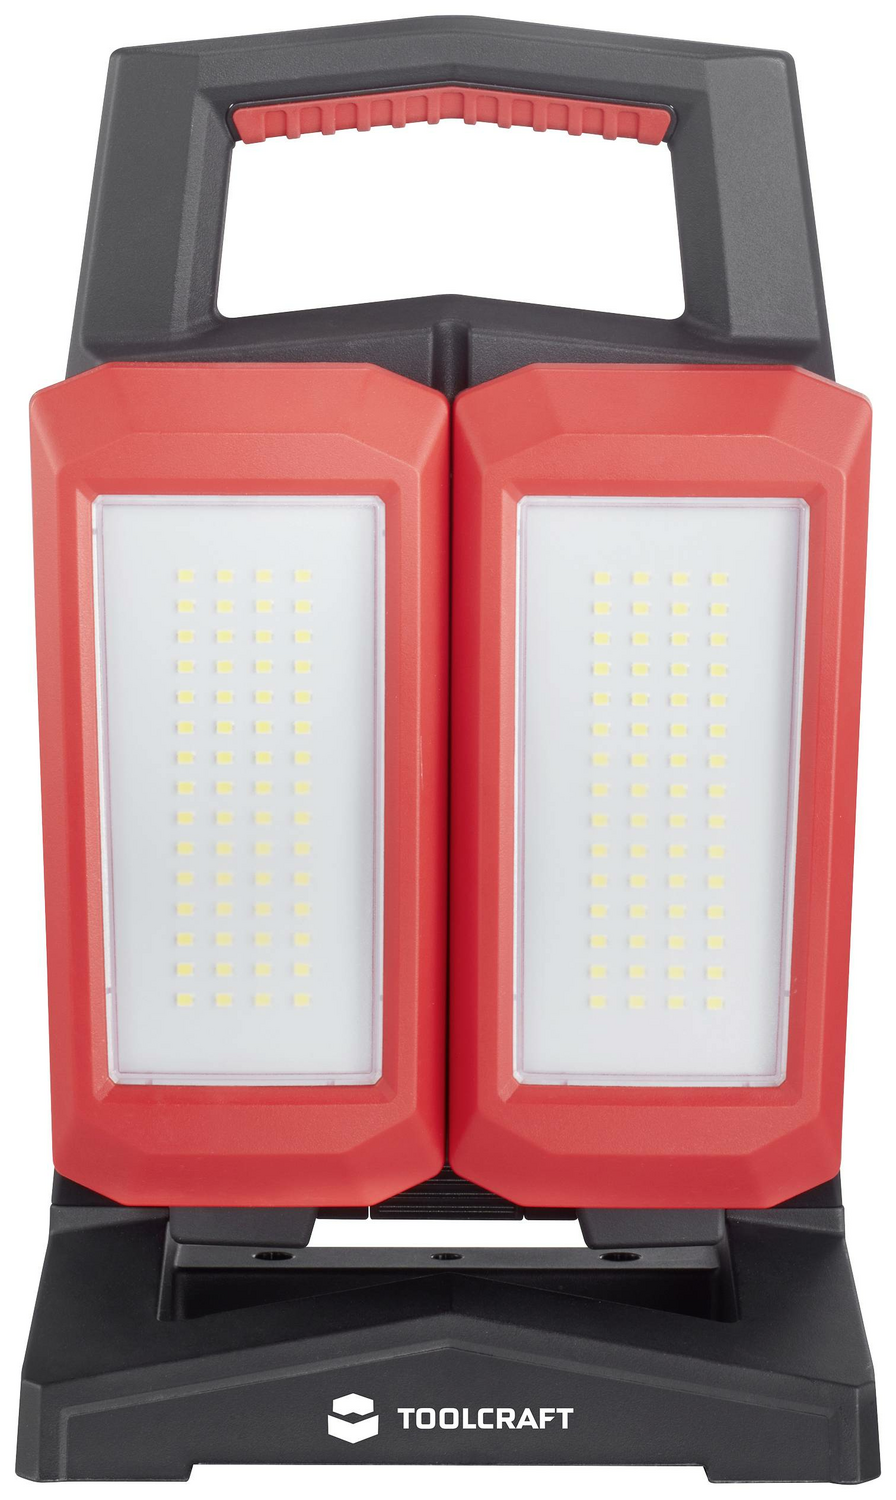 TOOLCRAFT SMD LED Arbeitsleuchte LED-Arbeitsscheinwerfer Leuchte Licht 4500 lm